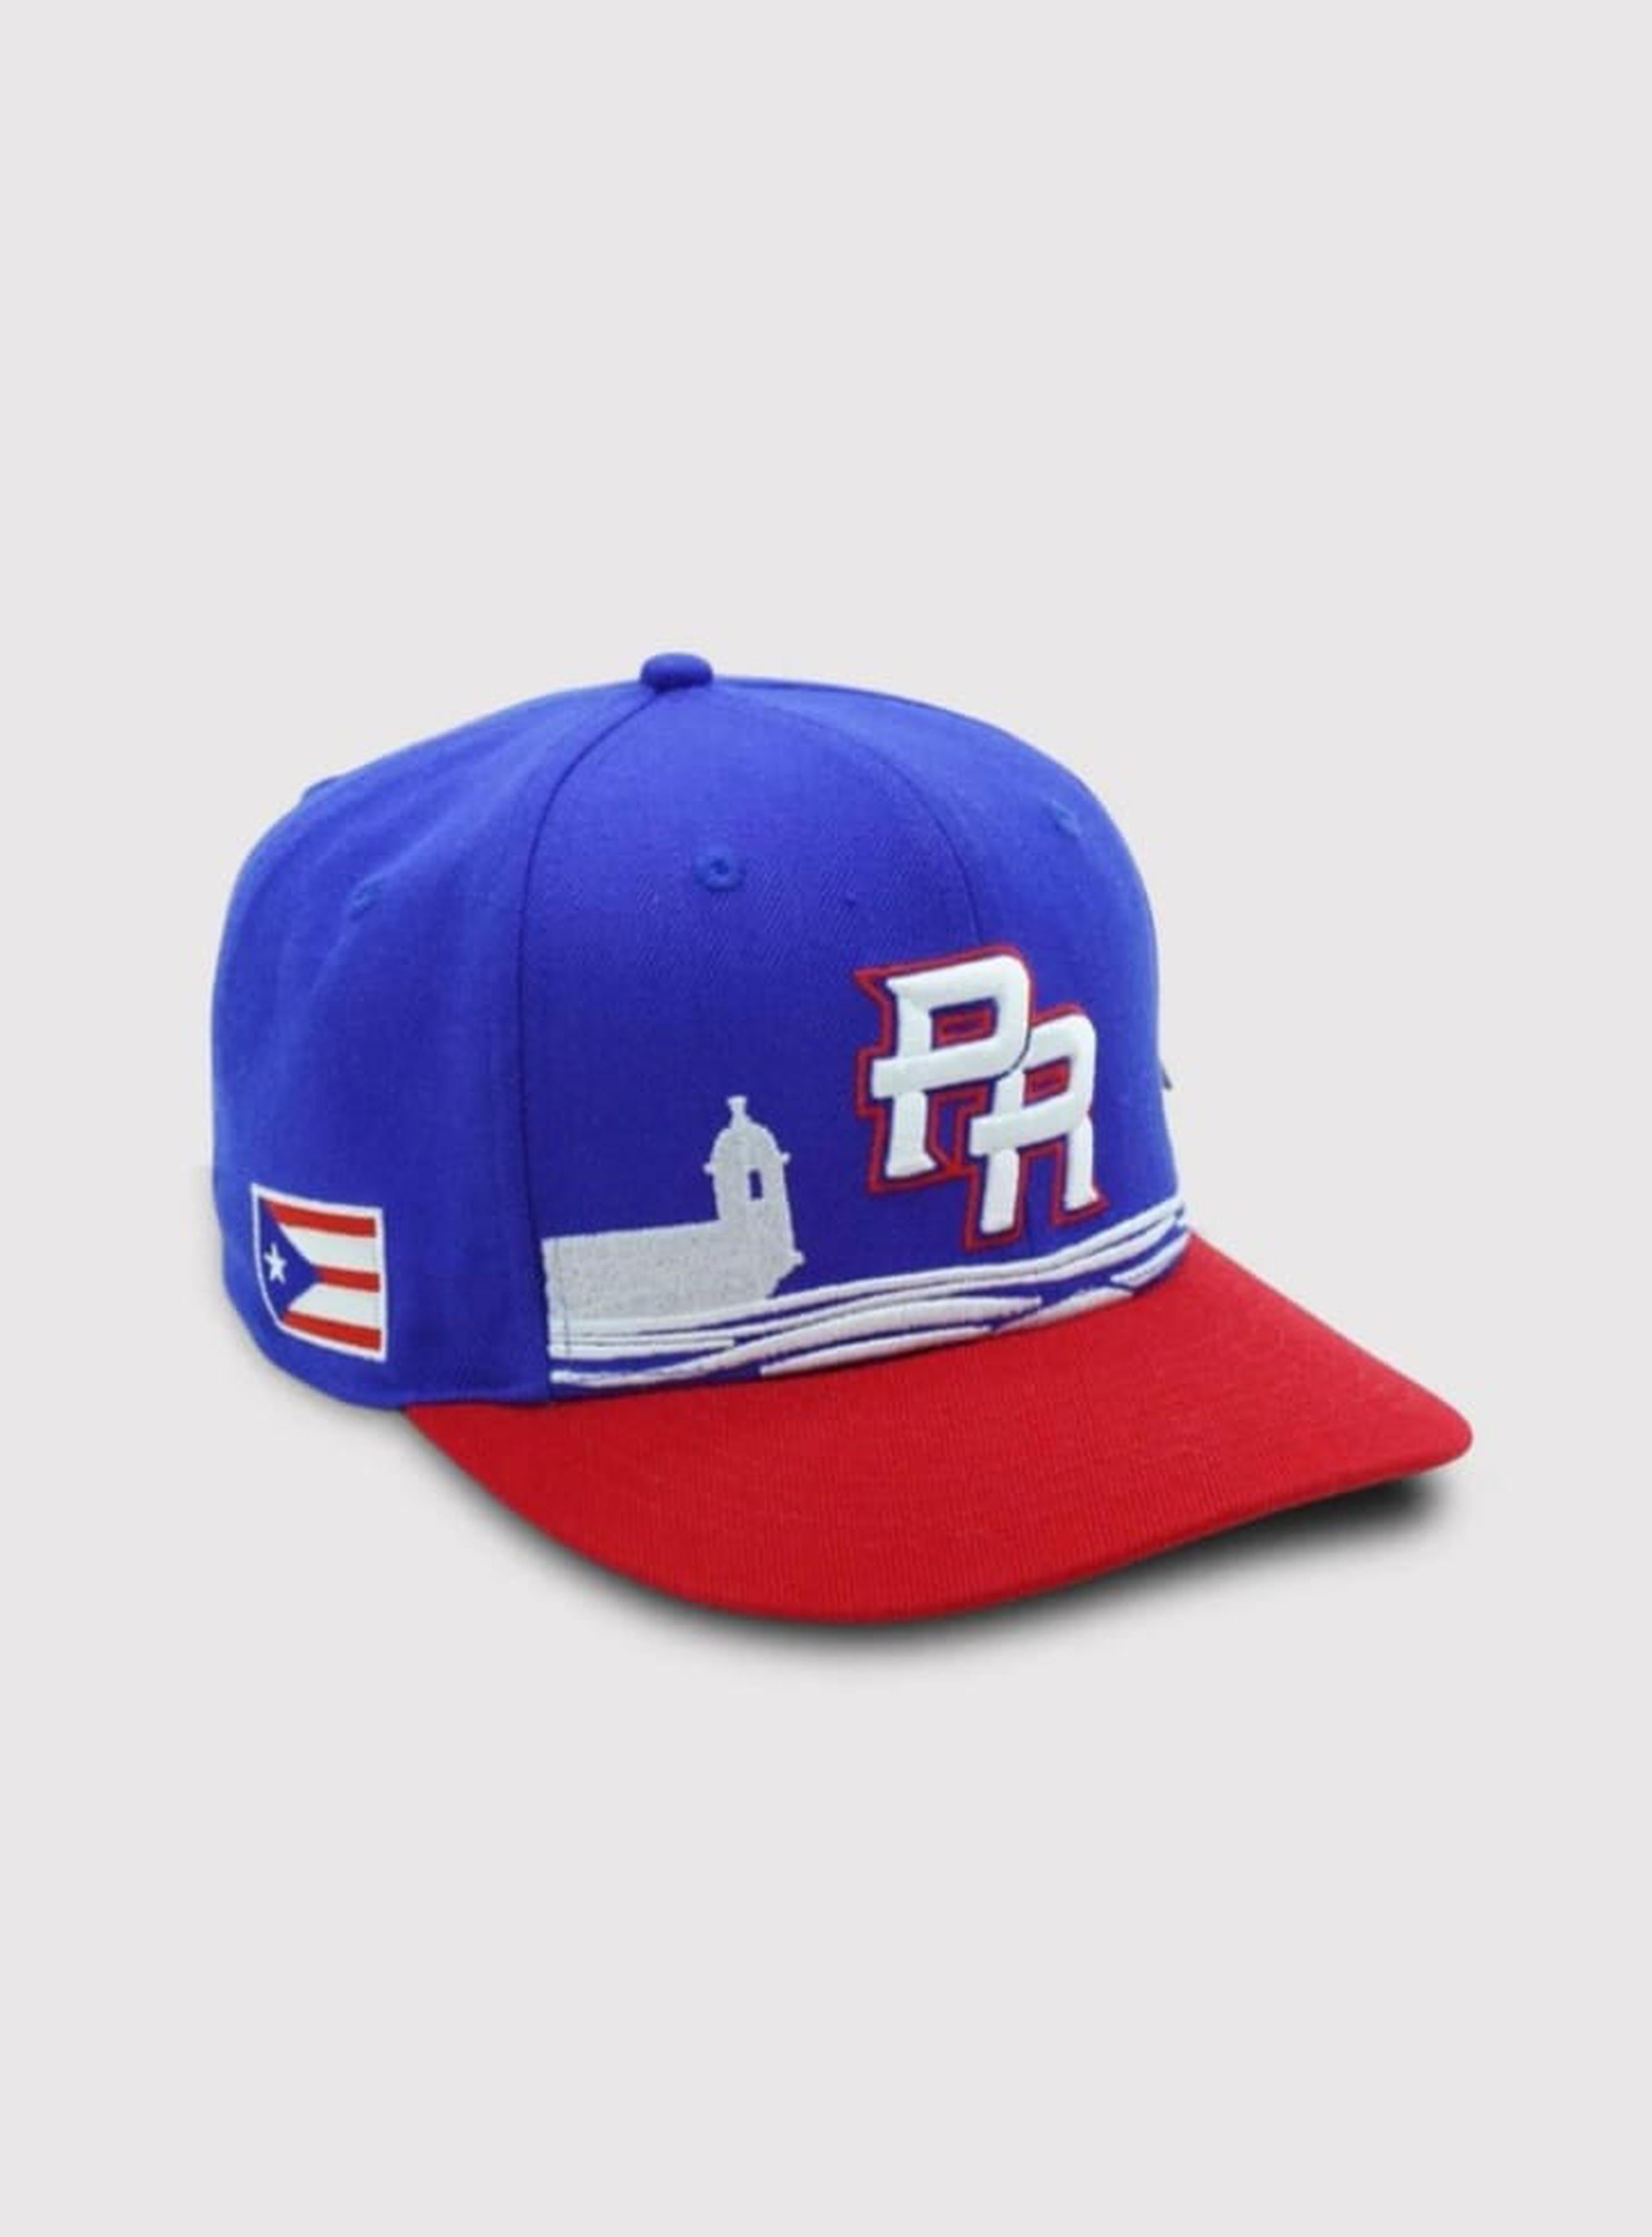 Esta será la gorra del uniforme alterno del equipo de PR para el Clásico Mundial de Béisbol.